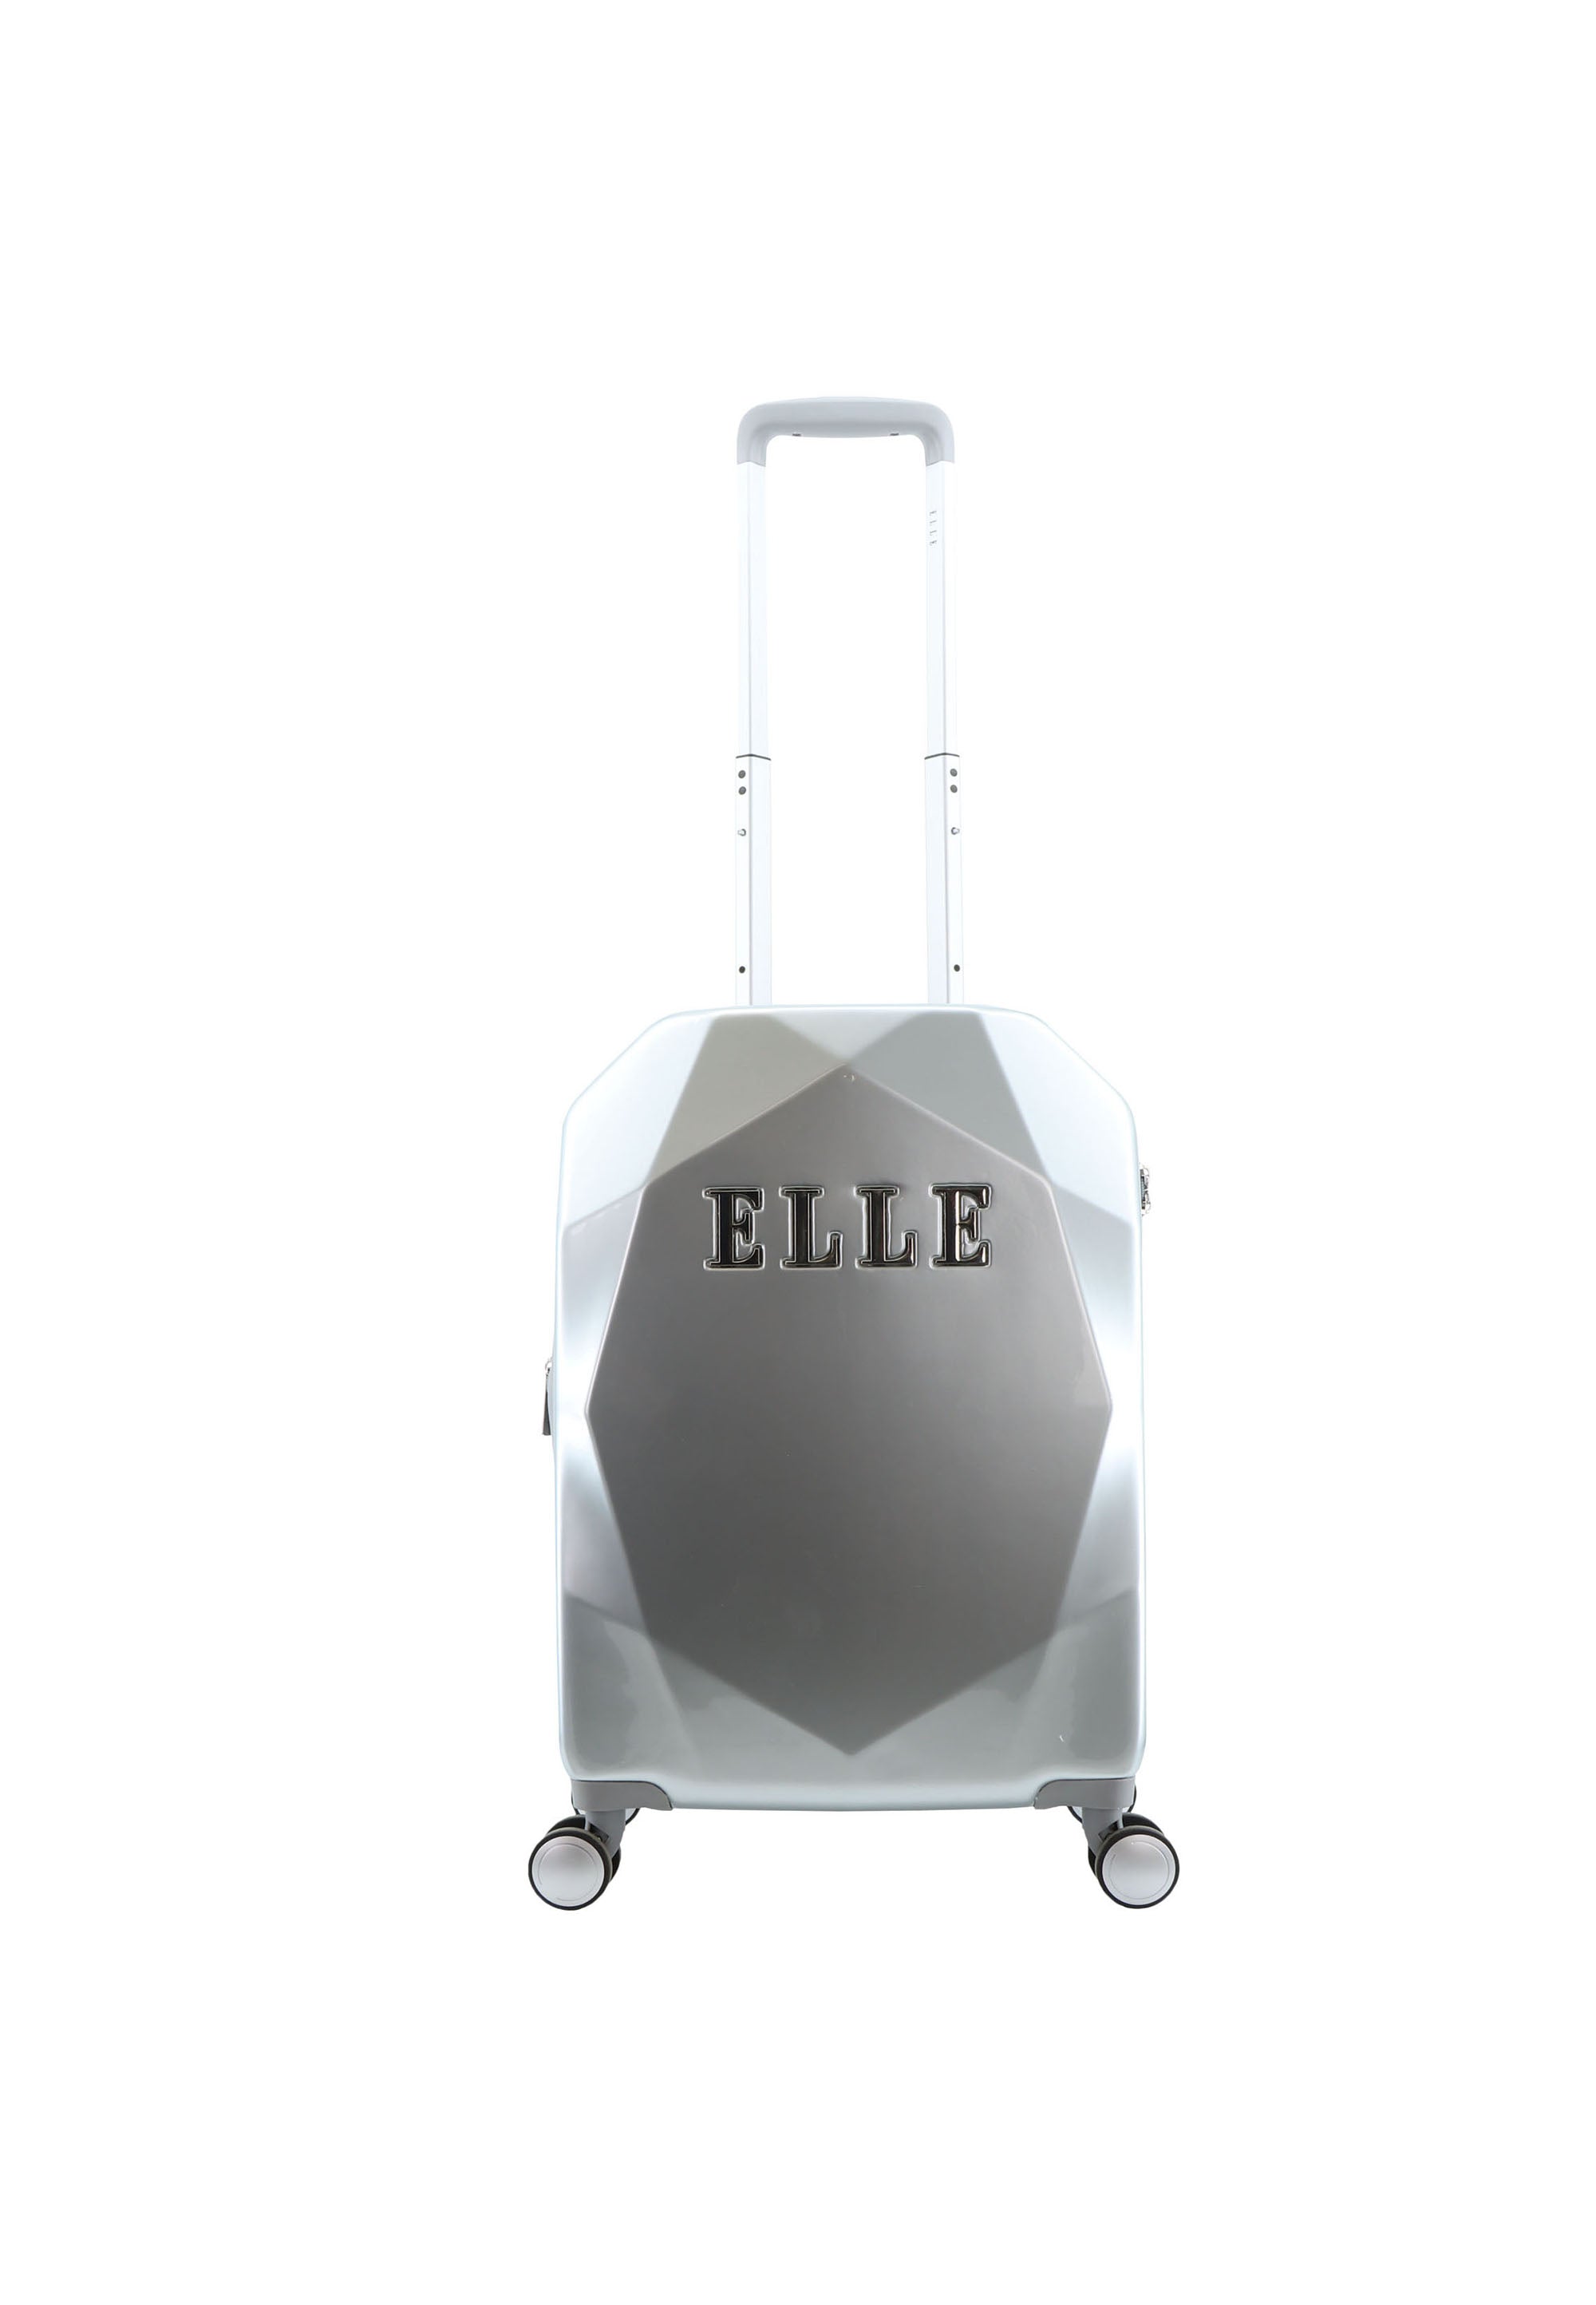 ELLE - Diamond Handgepäck Hartschalenkoffer / Trolley / Reisekoffer - 55 cm - (Small) - Silber